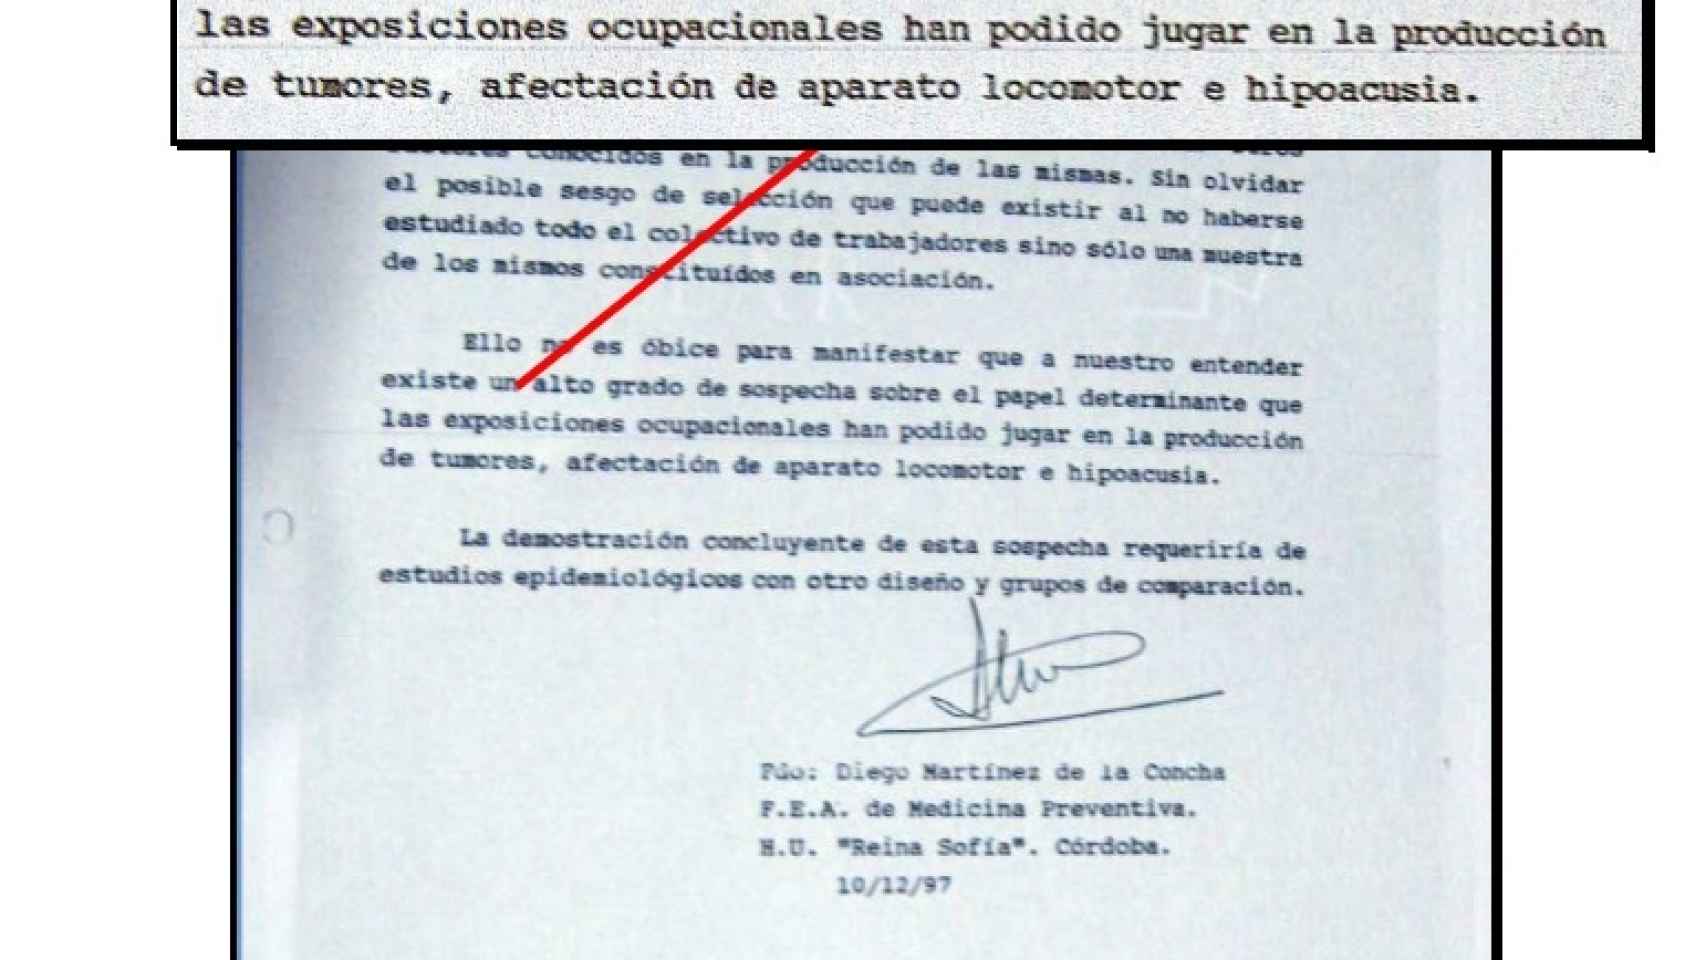 Extracto del informe del doctor Martínez de La Concha.